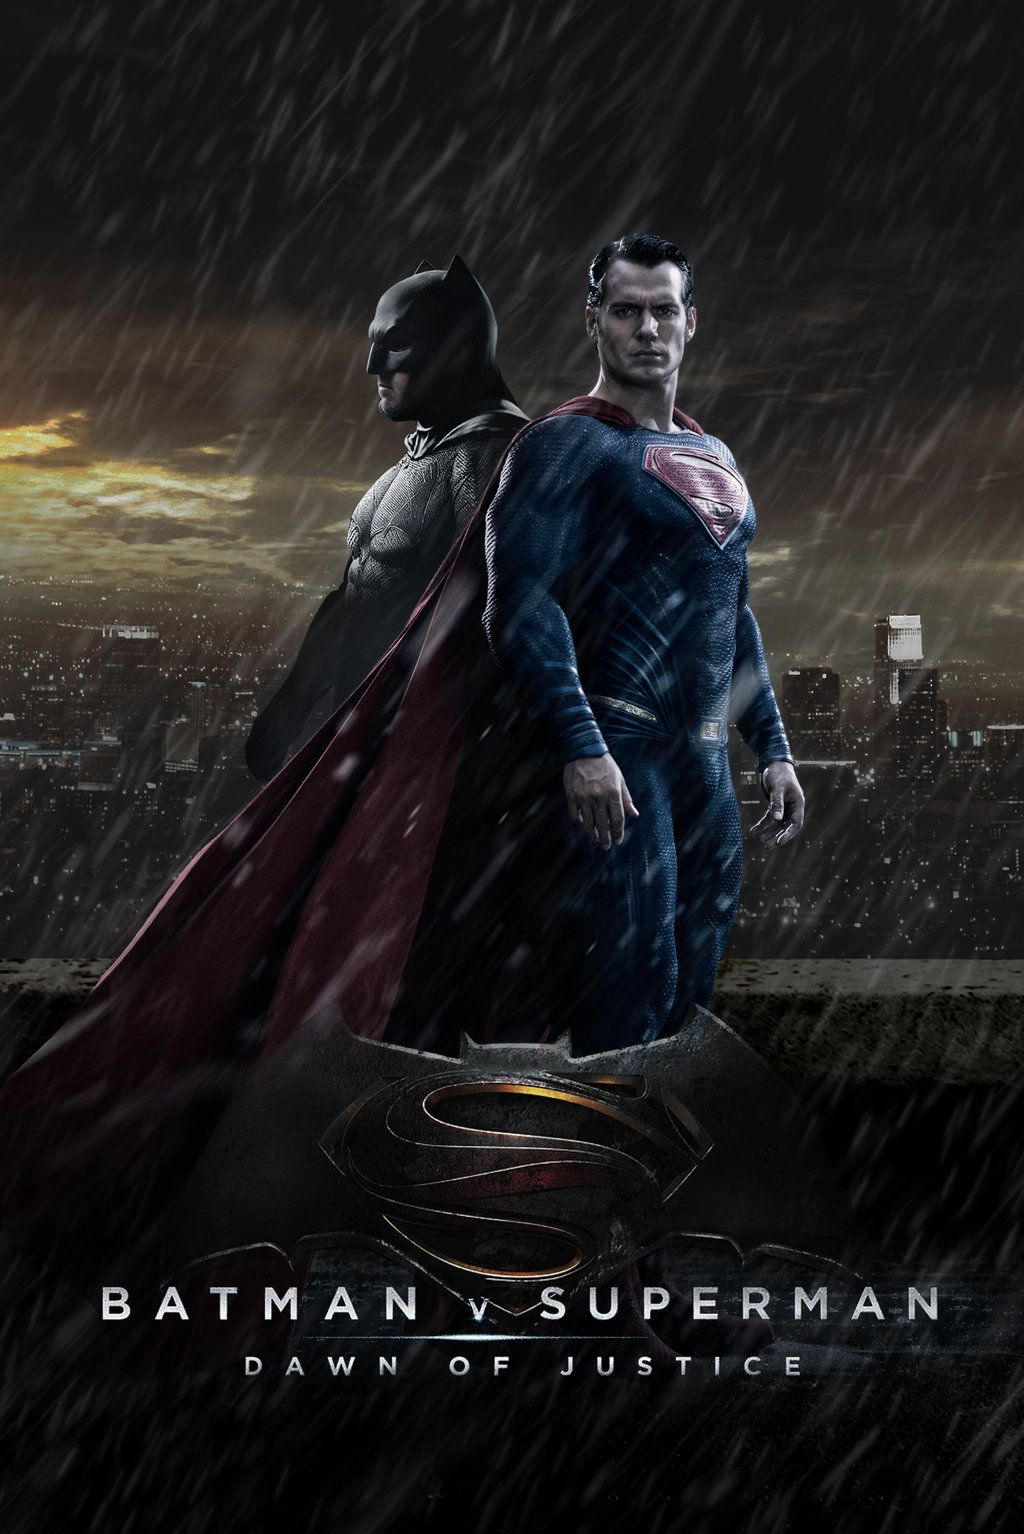 Batman-vs-superman-dawn-of-justice-wallpapers.jpg